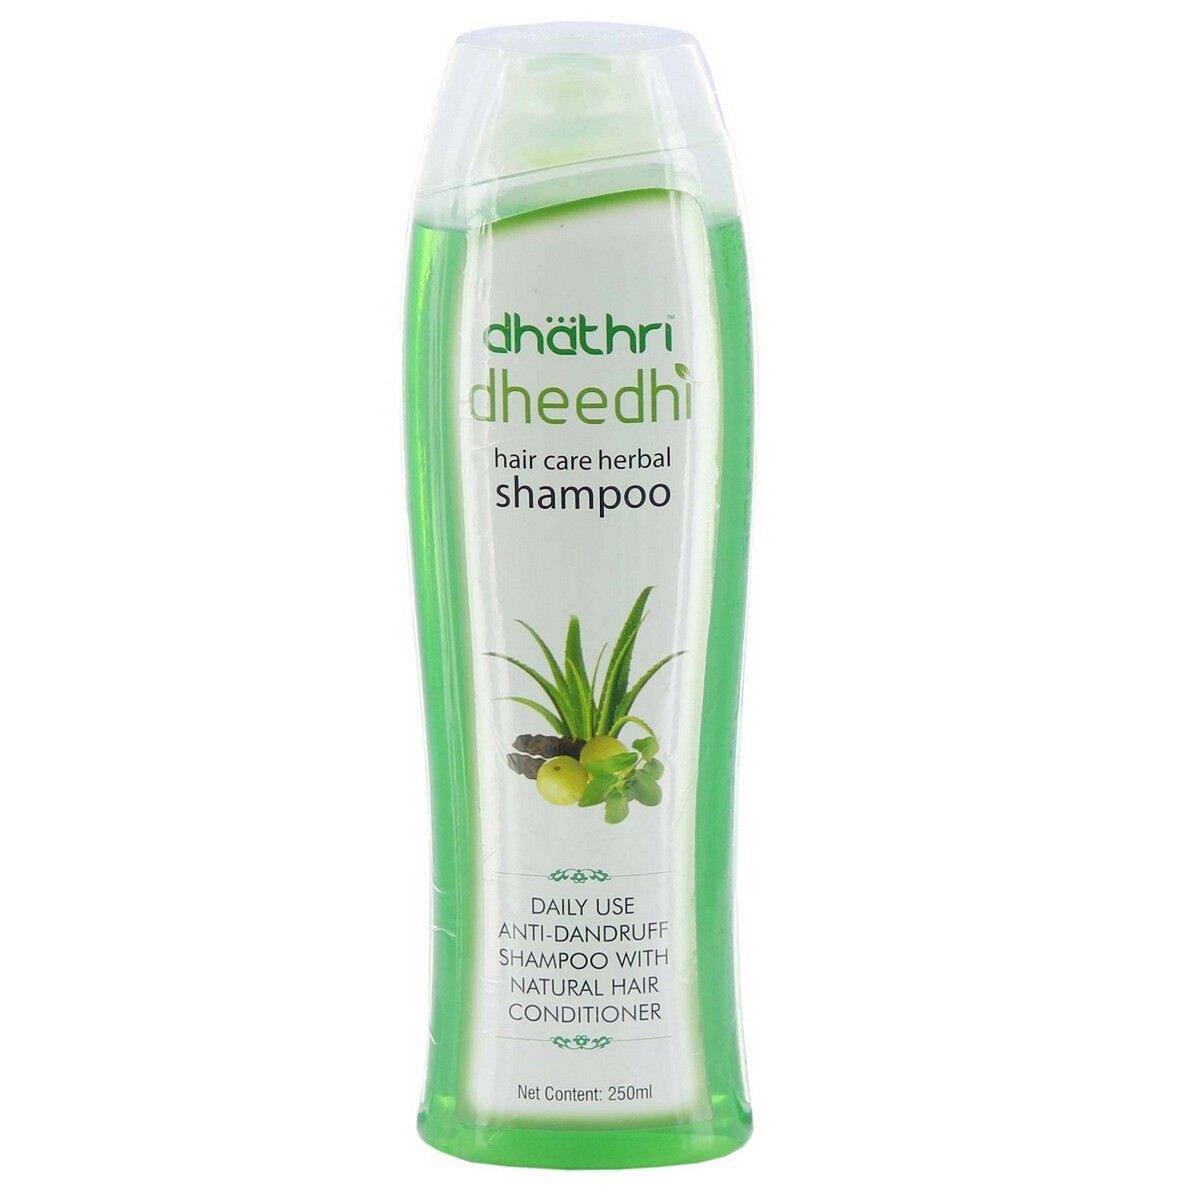 Dhathri Dheedi Hair Care Herbal Shampoo 250ml